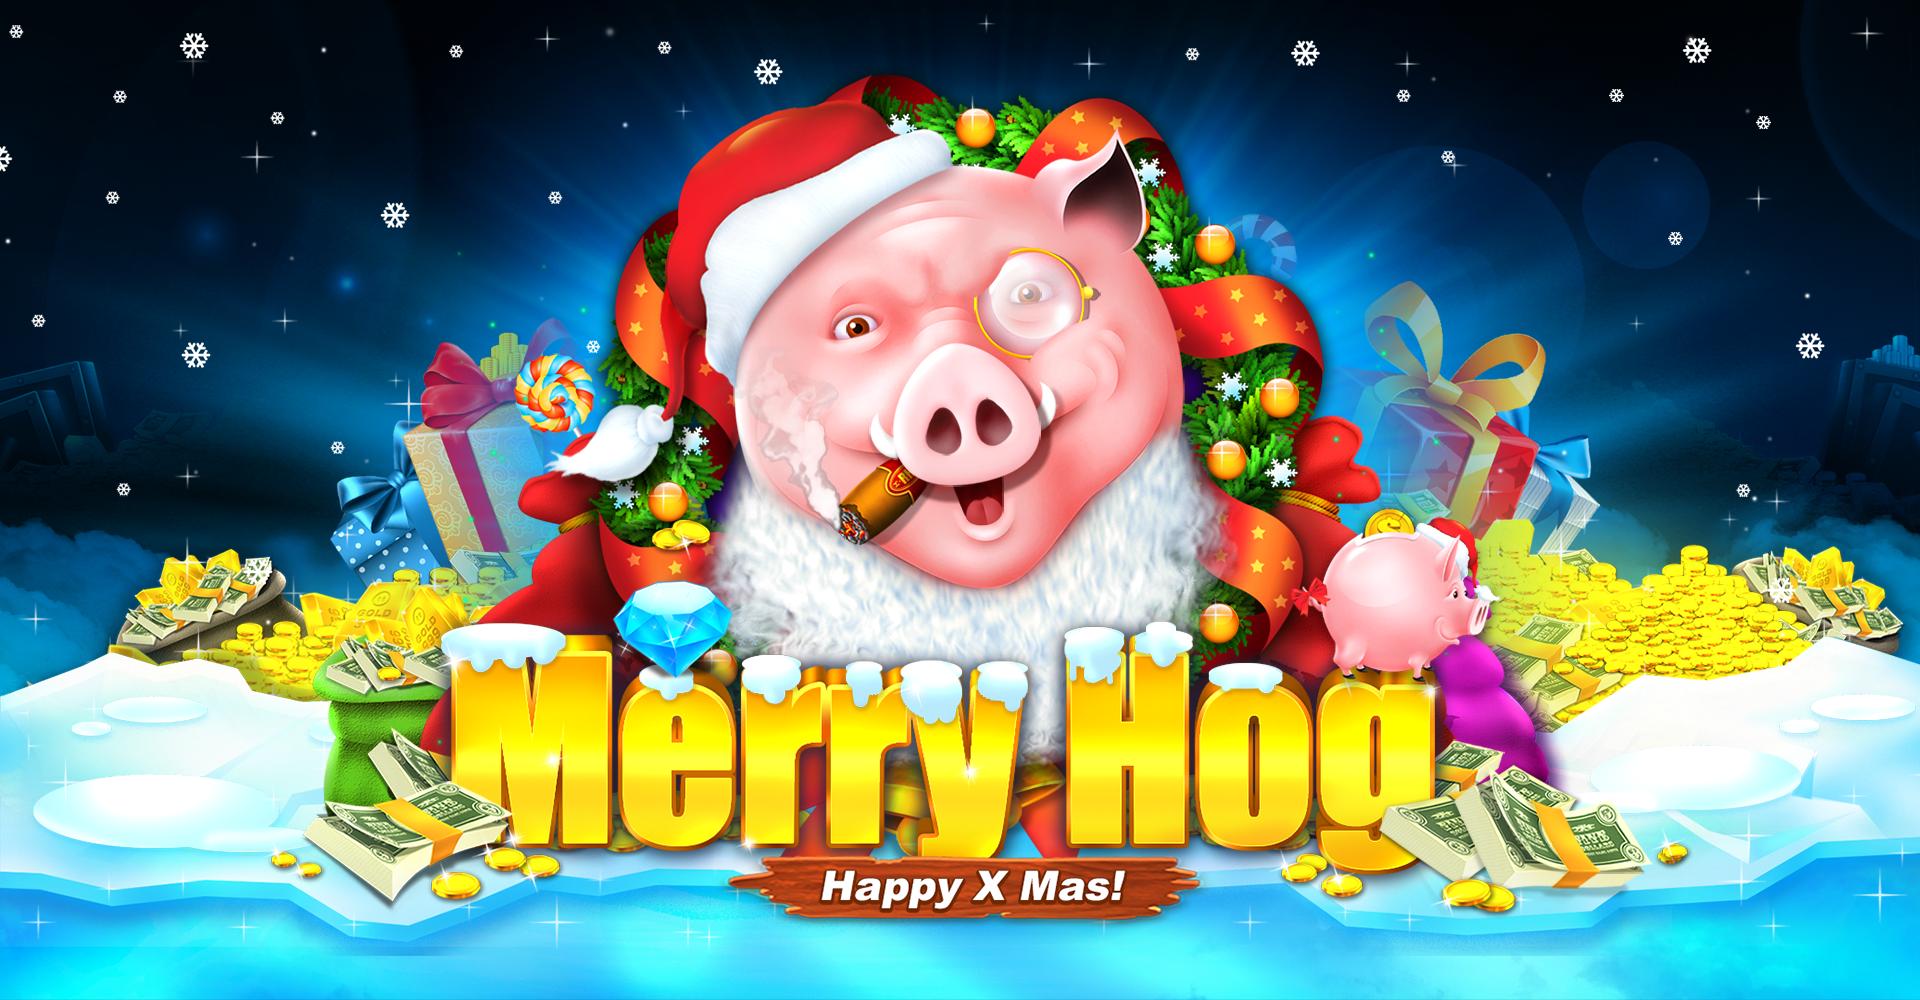 Merry Hog | Promotion pack | Online slot